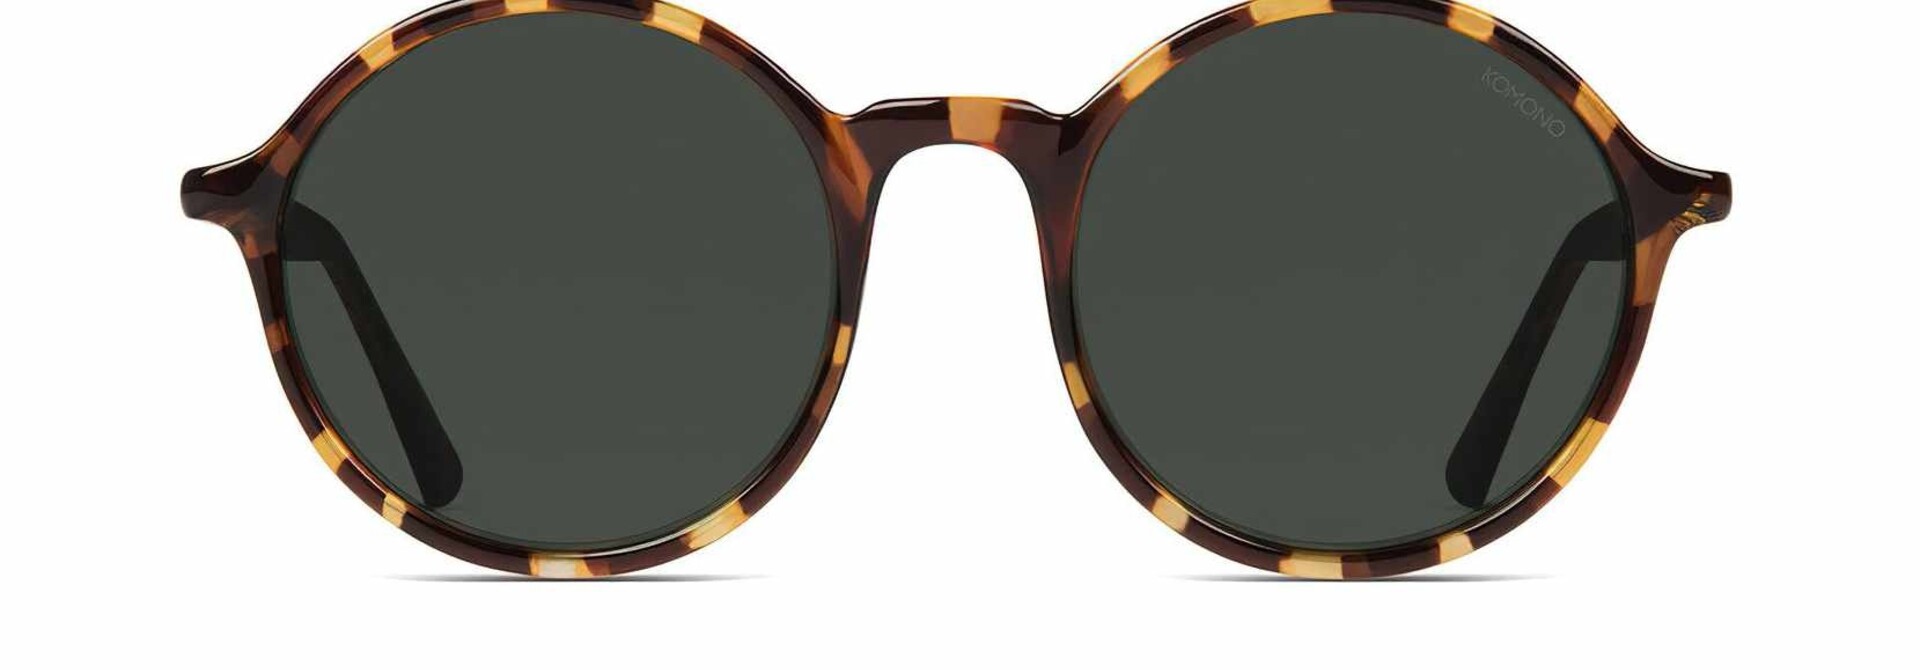 ♣ Madison Tortoise Sunglasses